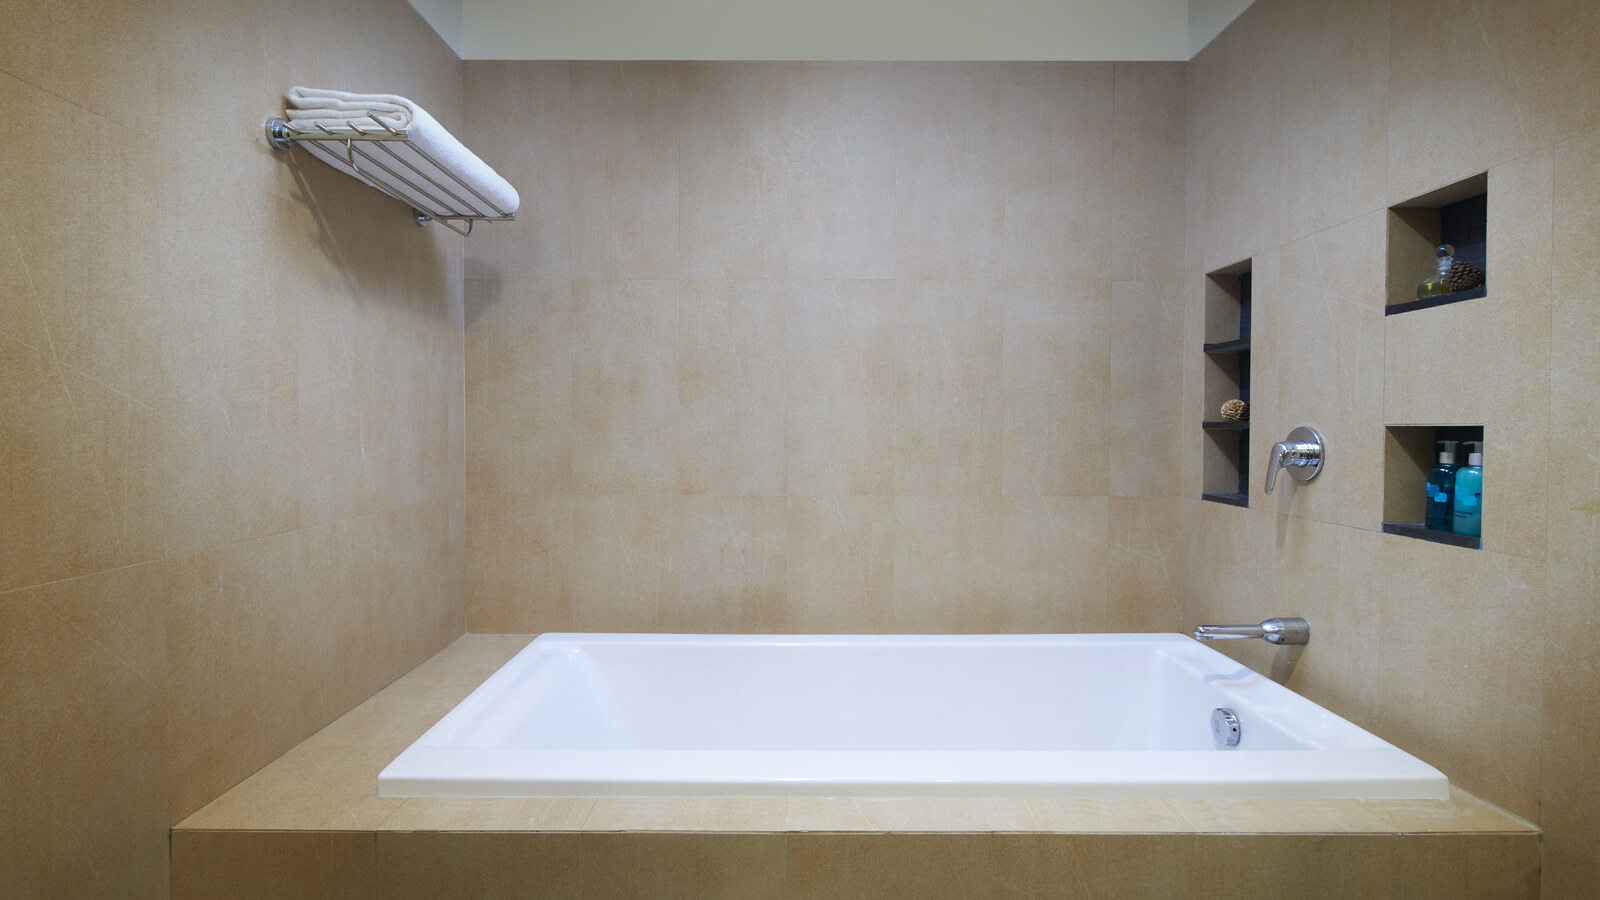 Two Bedroom - Bathtub in master bathroom - ชามา สุขุมวิท กรุงเทพฯ